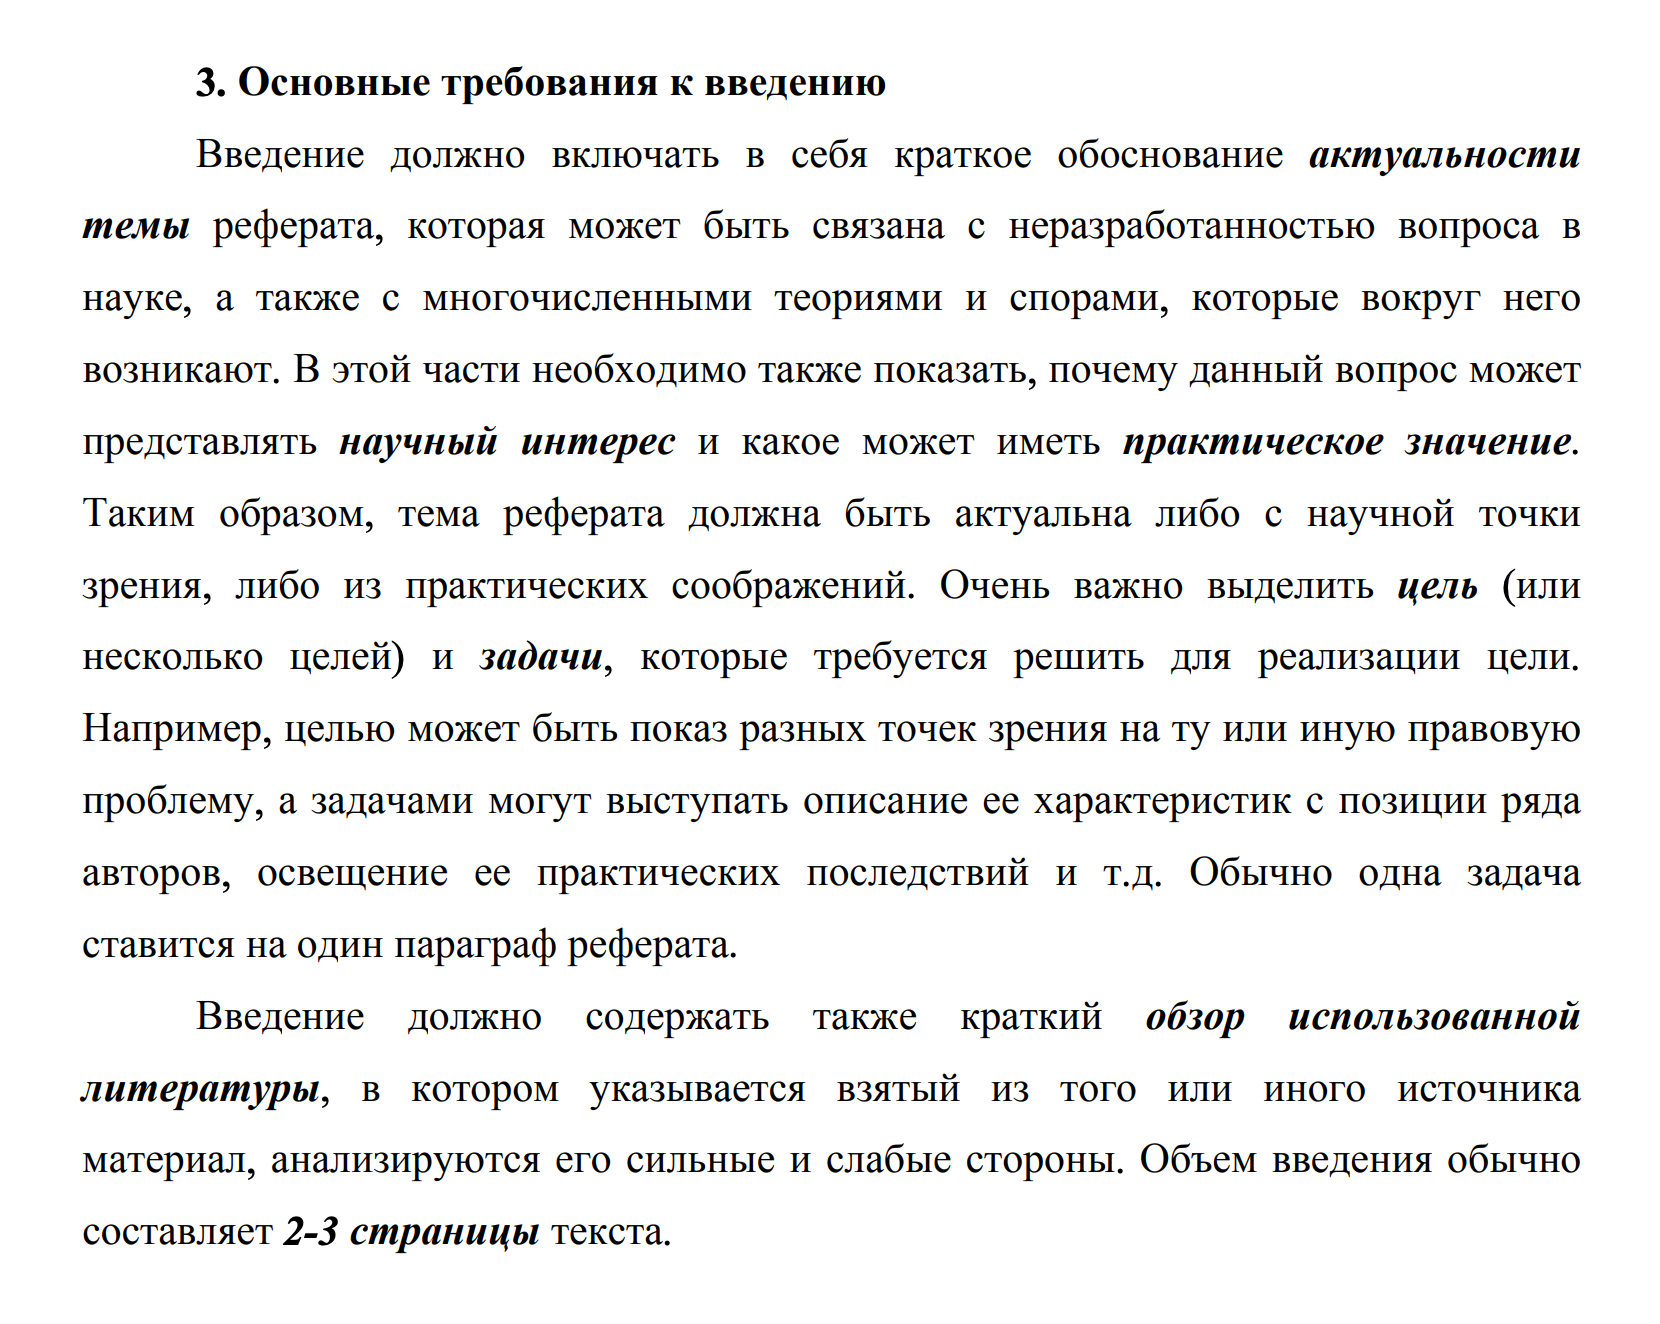 Методические рекомендации МГИМО по оформлению введения к реферату. Источник: mgimo.ru